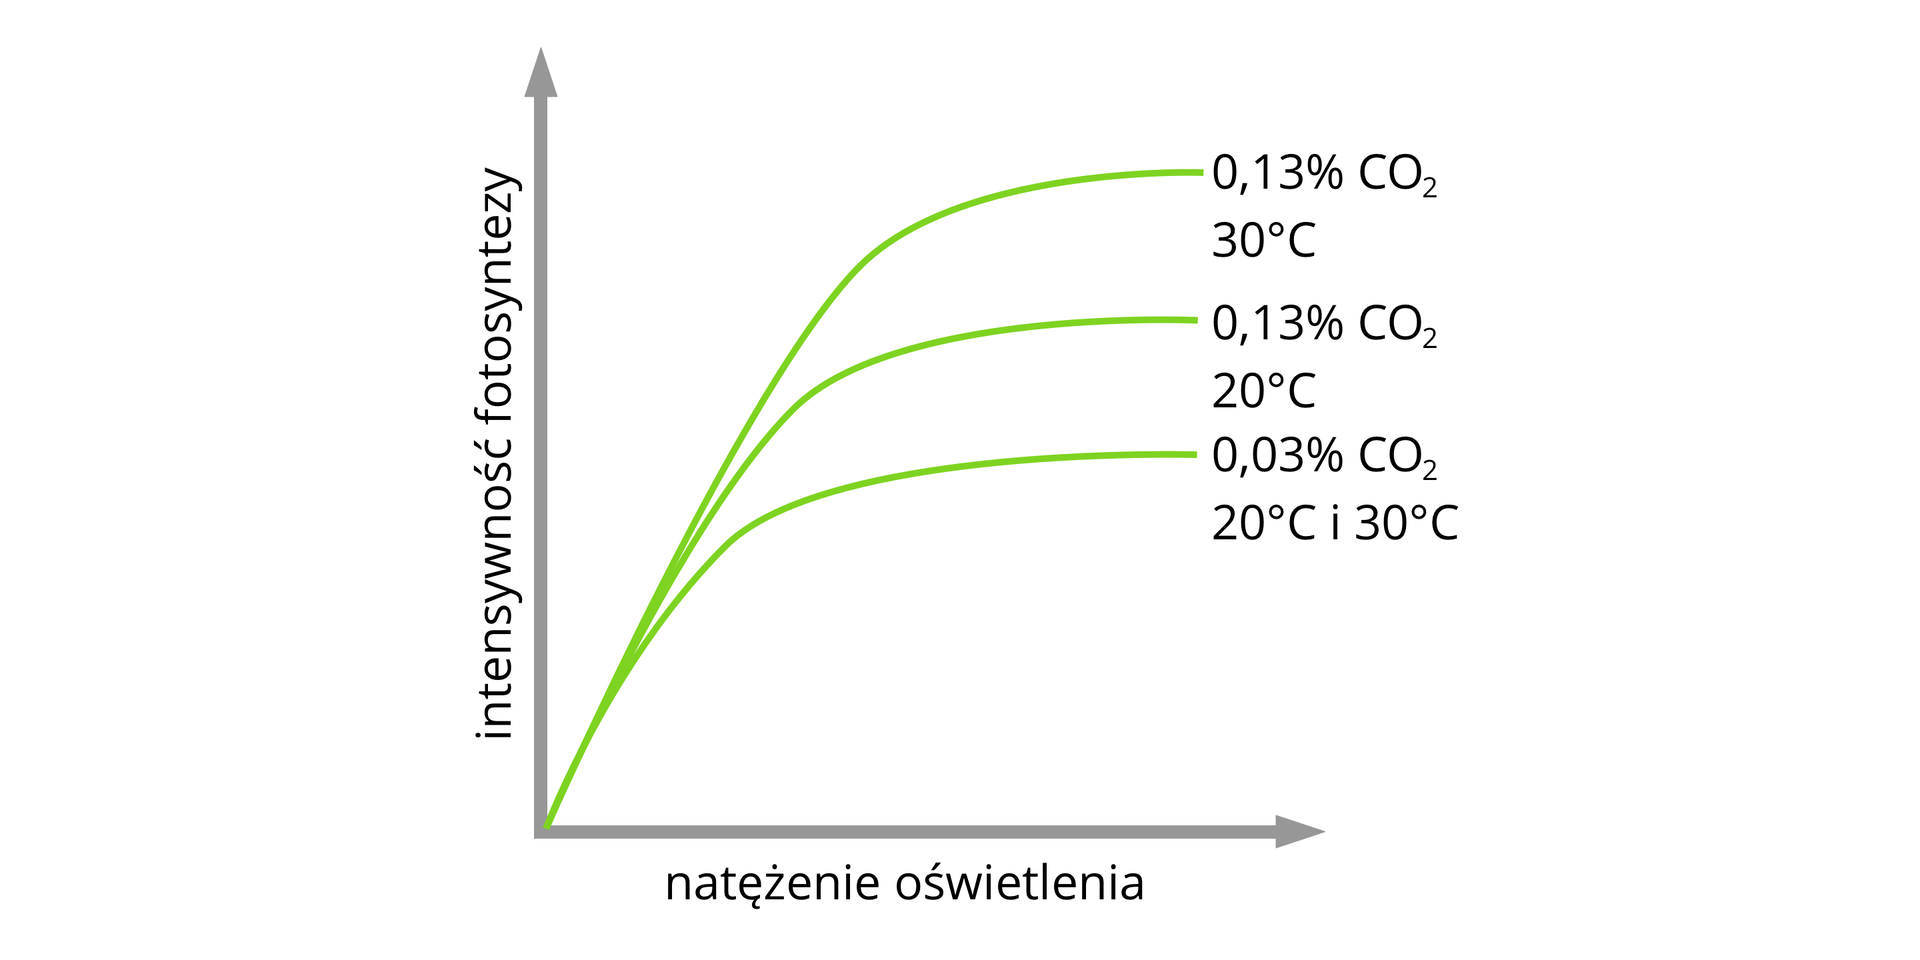 Wykres zależności intensywności fotosyntezy (oś Y) od natężenia oświetlenia (oś X). Intensywność fotosyntezy jest najniższa dla 0,03% CO2 20 i 30 stopni Celsjusza,. Intensywność fotosyntezy jest większa dla 0,13% CO2 i 20 stopni Celsjusza. Intensywność fotosyntezy jest największa dla 0,13% CO2 i 30 stopni Celsjusza.